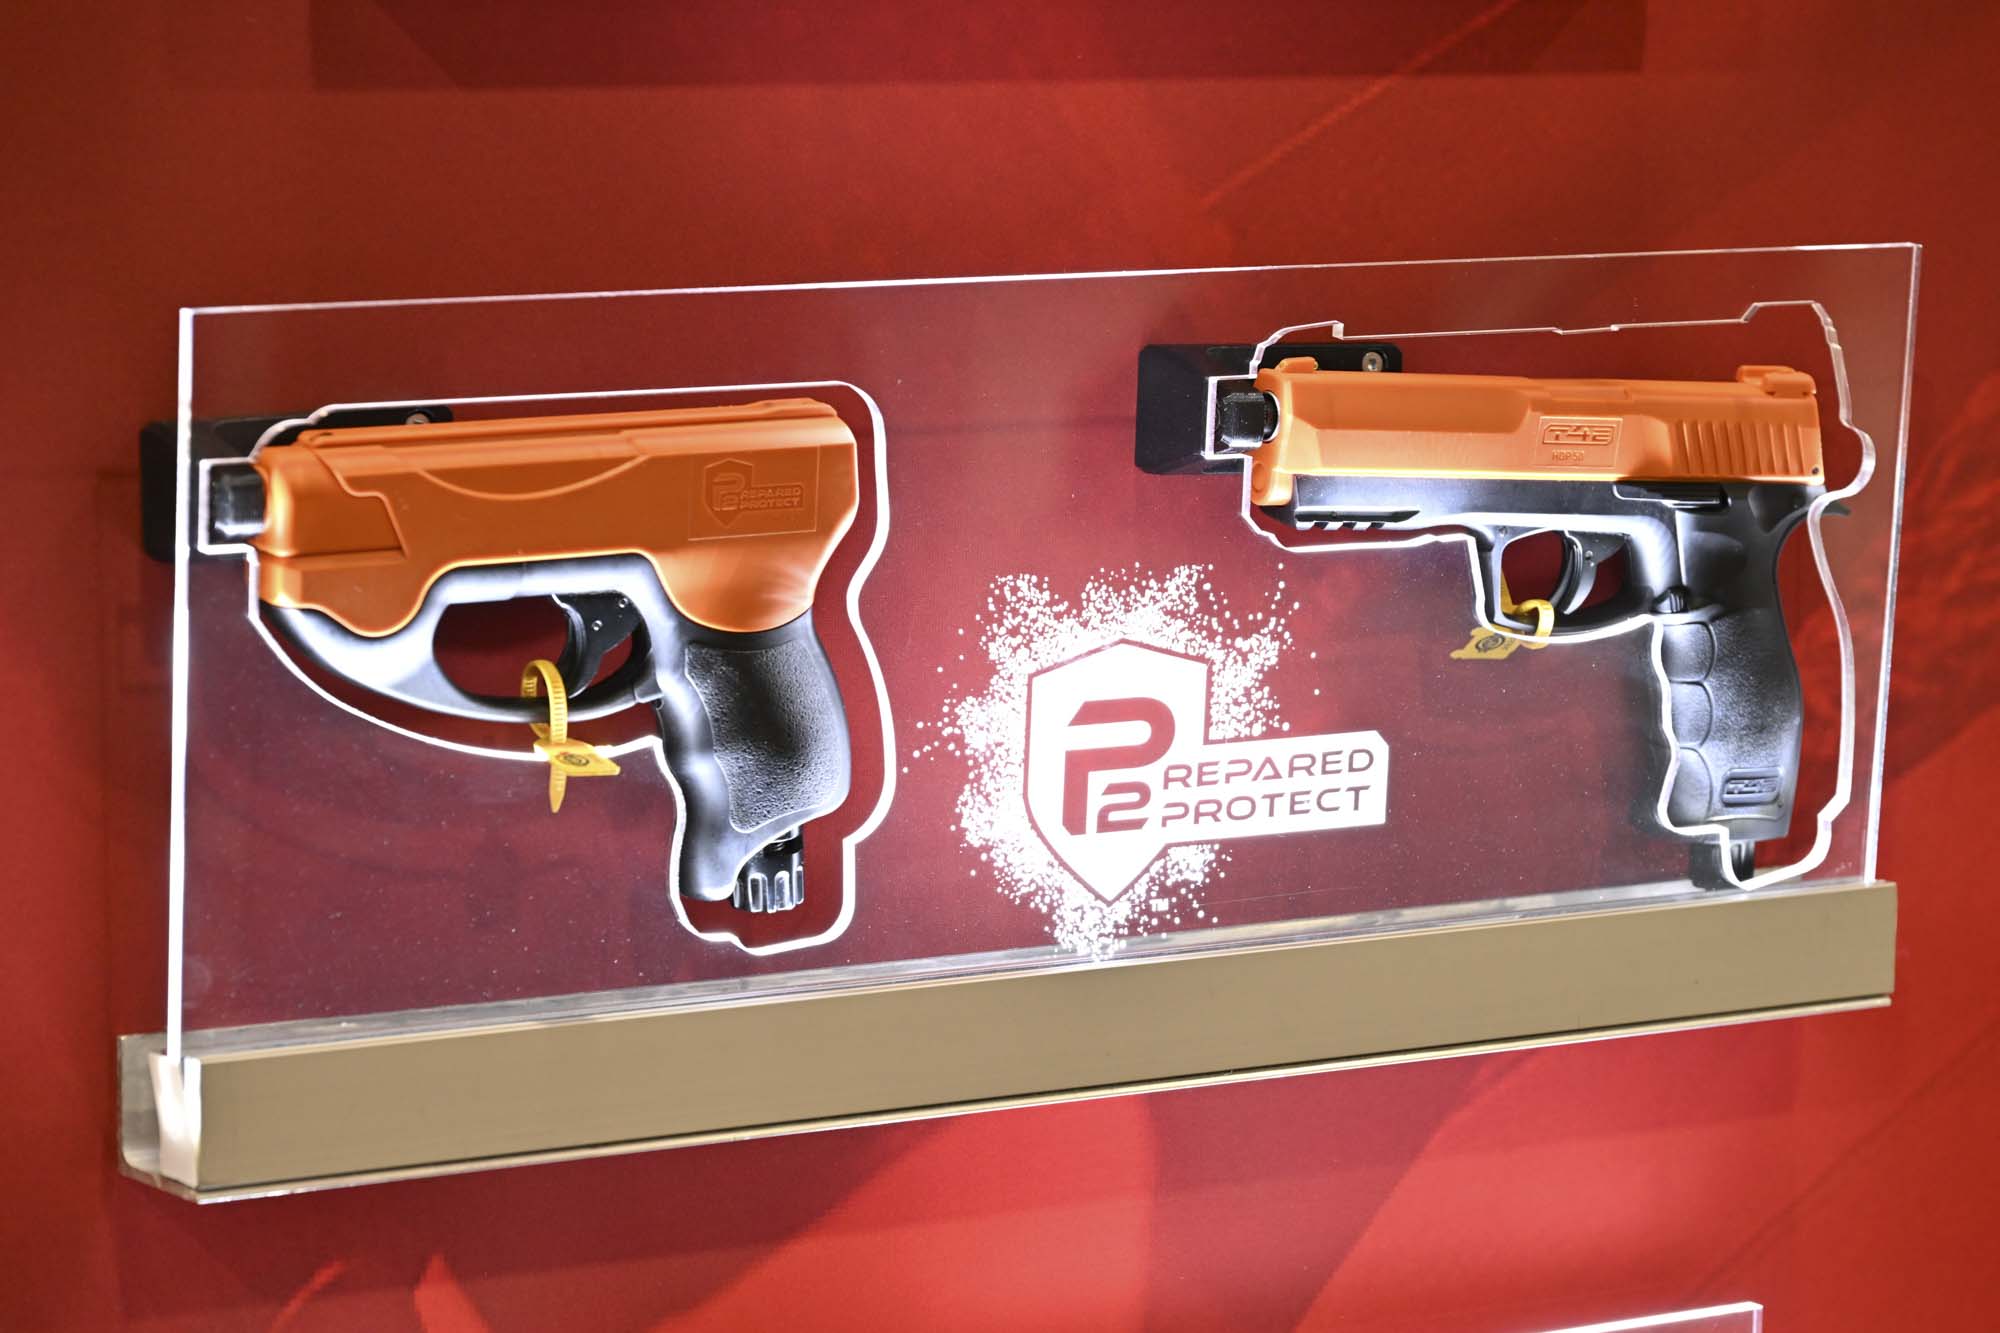 Umarex HDR 50, il revolver per la difesa abitativa non letale 